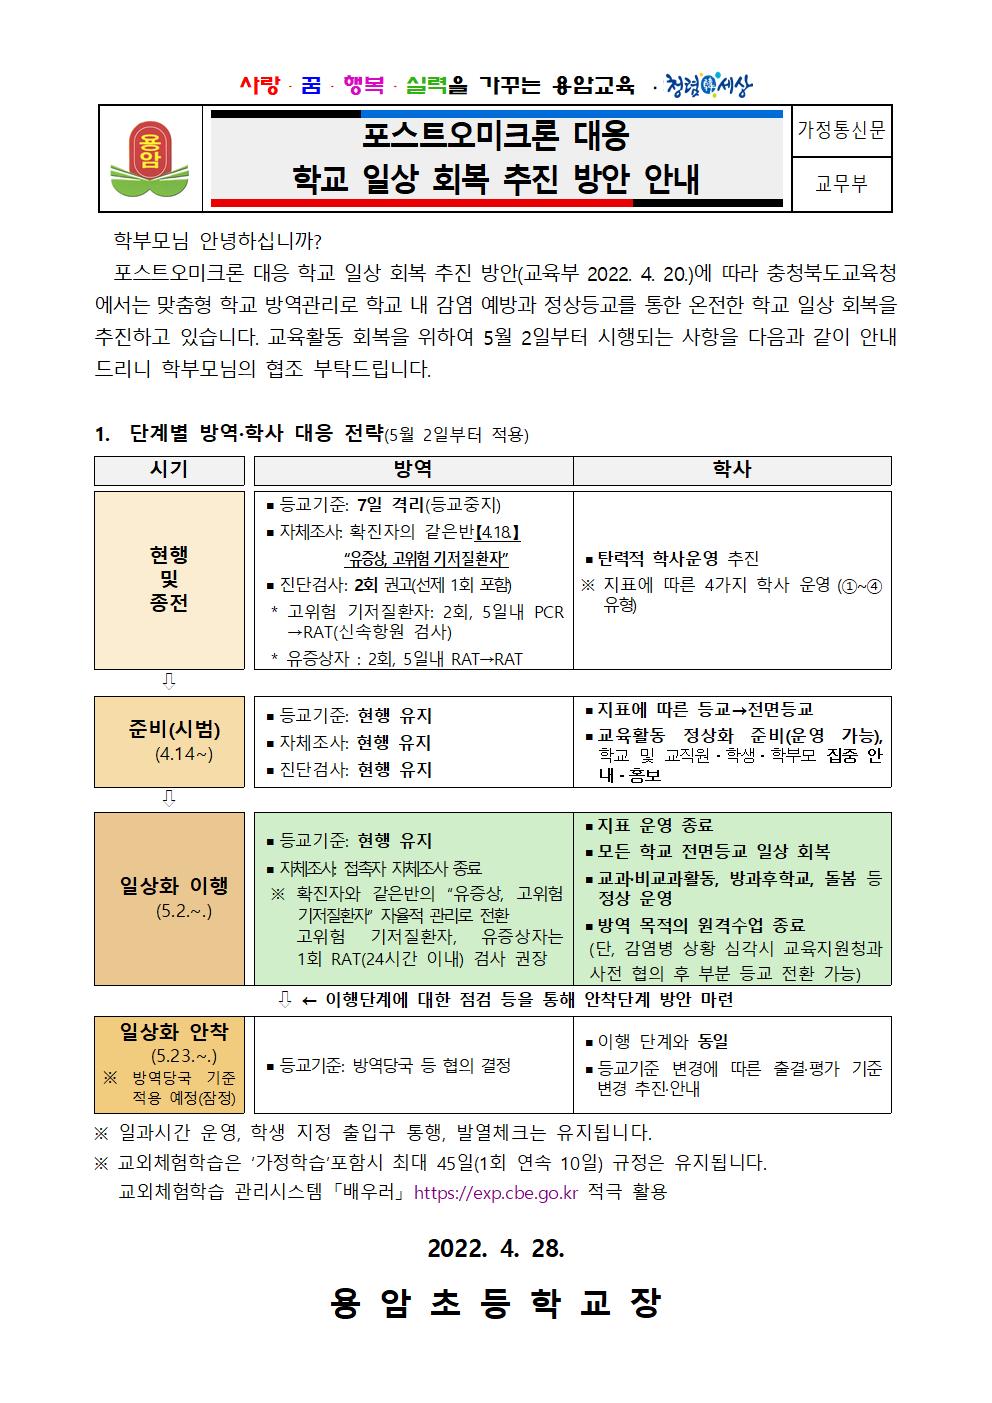 포스트오미크론 대응 학교 일상 회복 방안 가정통신문001